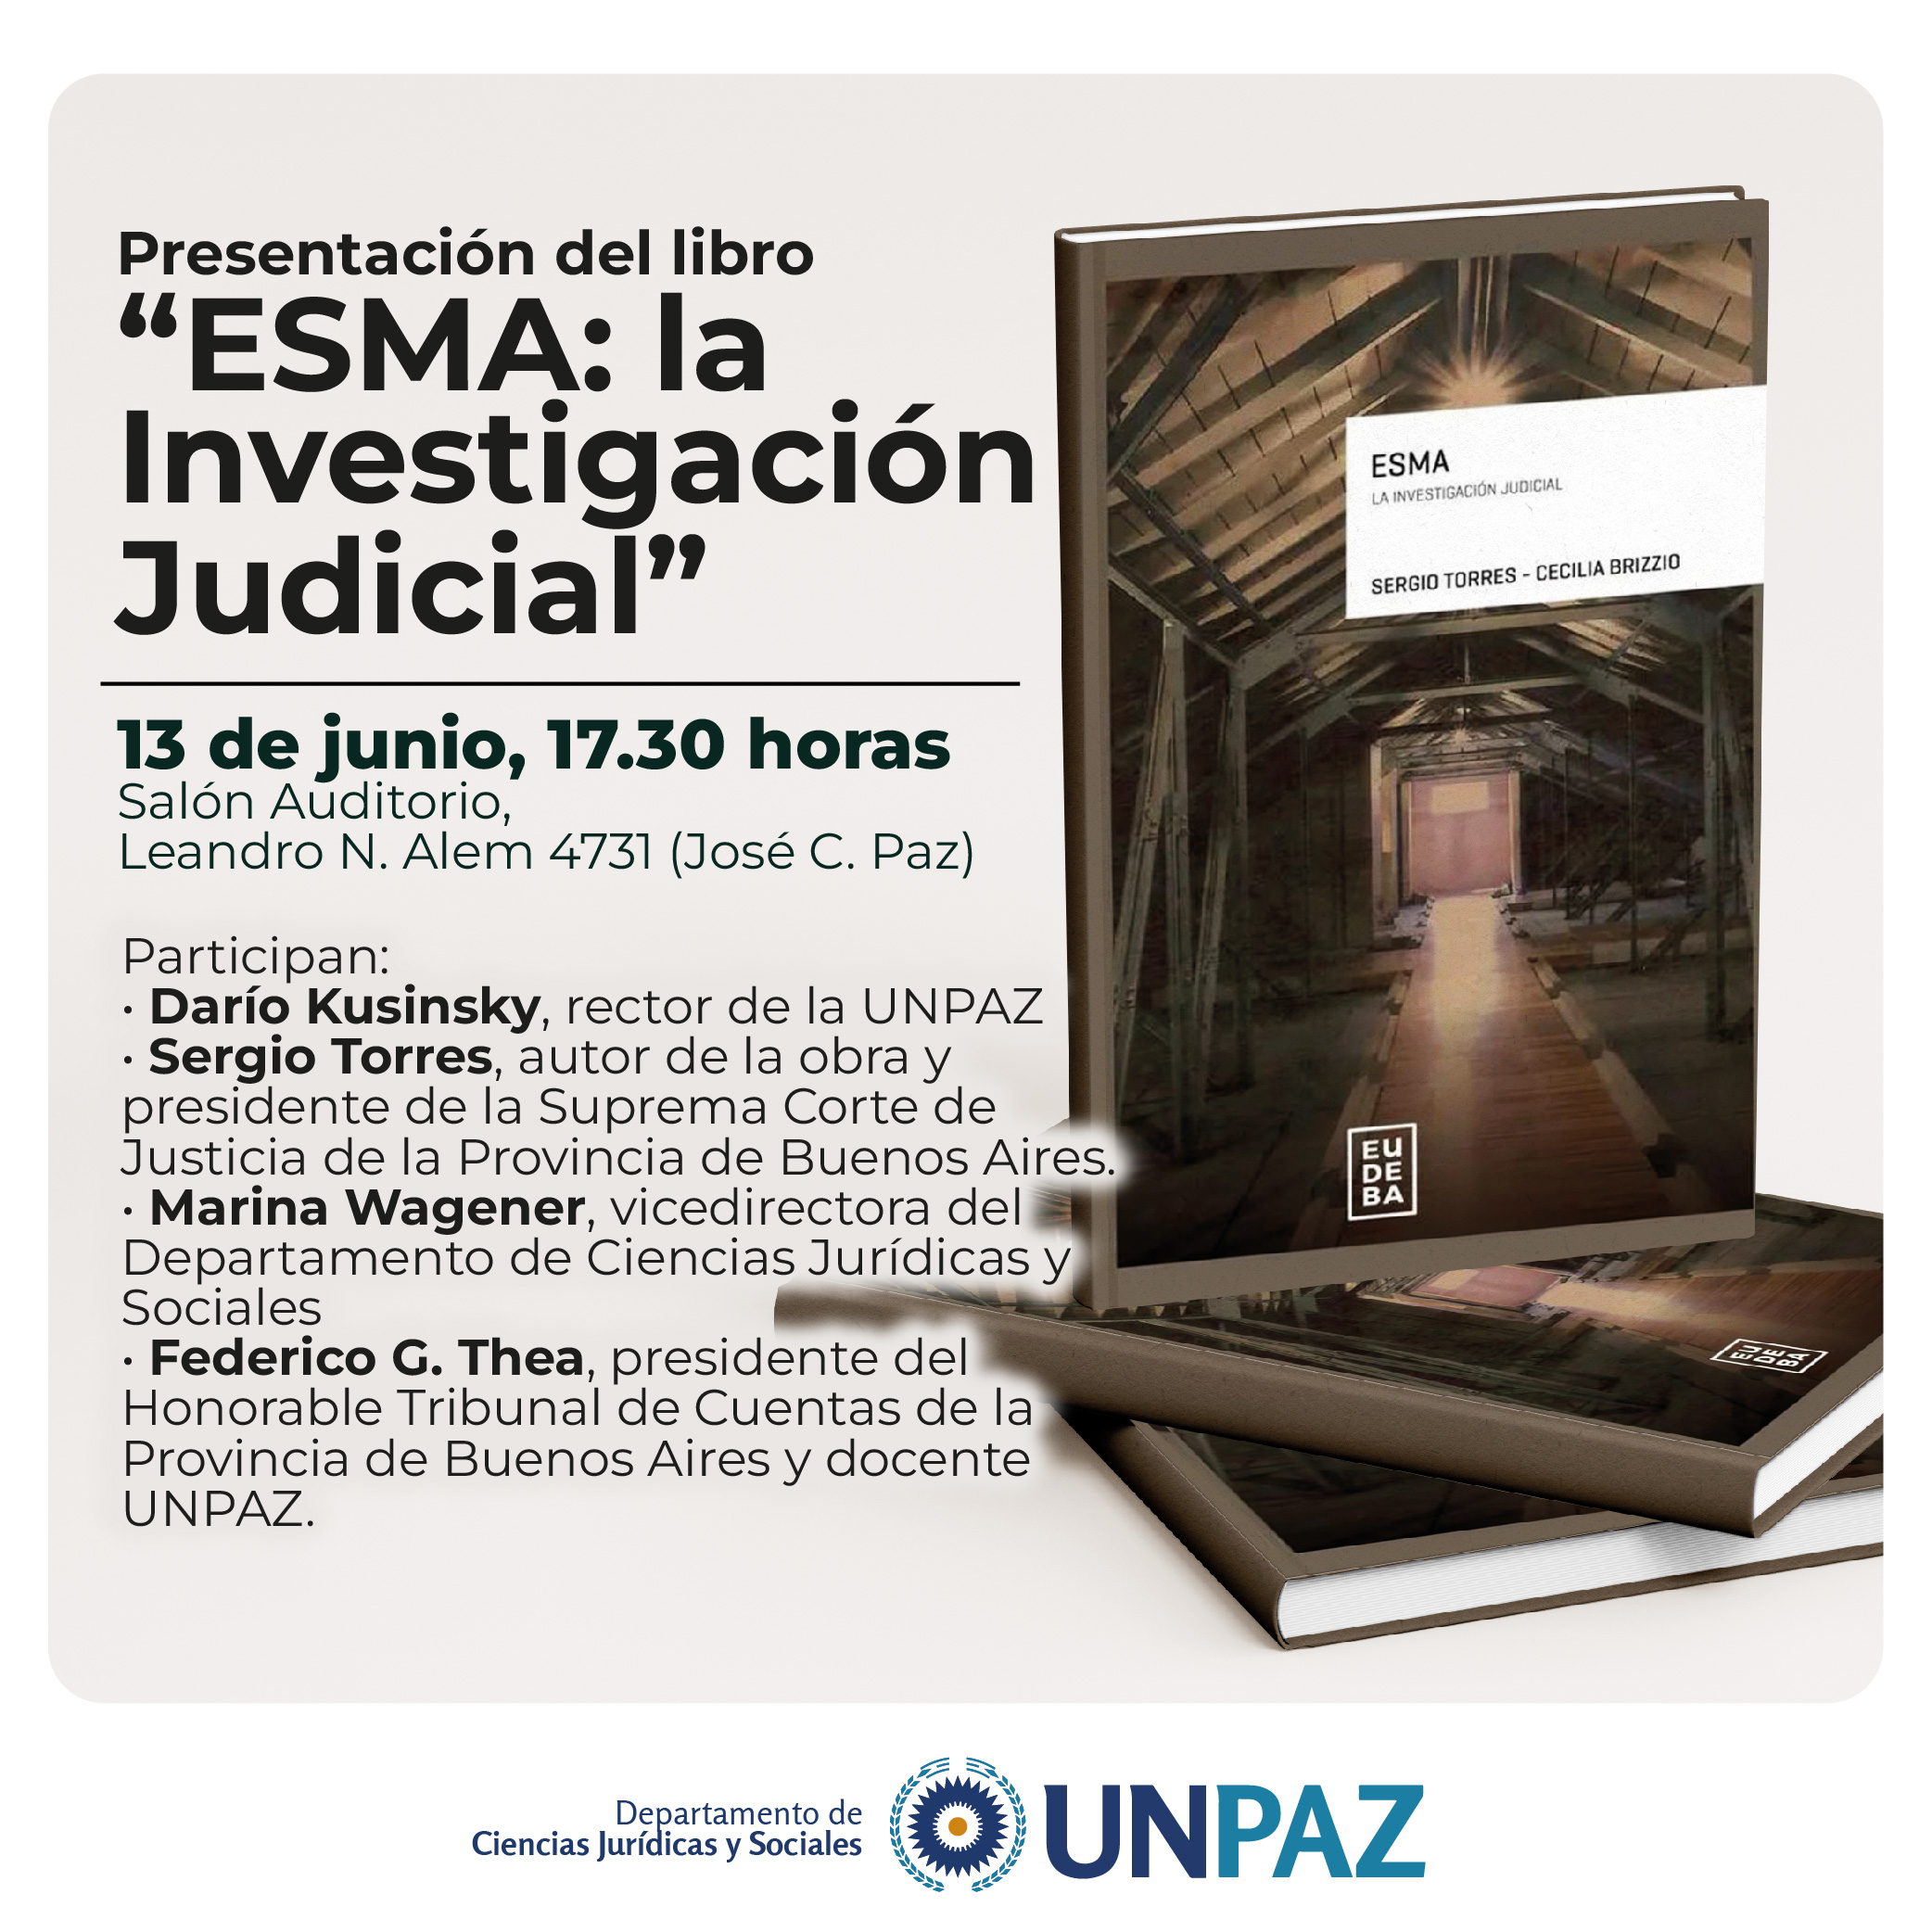 Presentación del libro “ESMA: la Investigación Judicial”